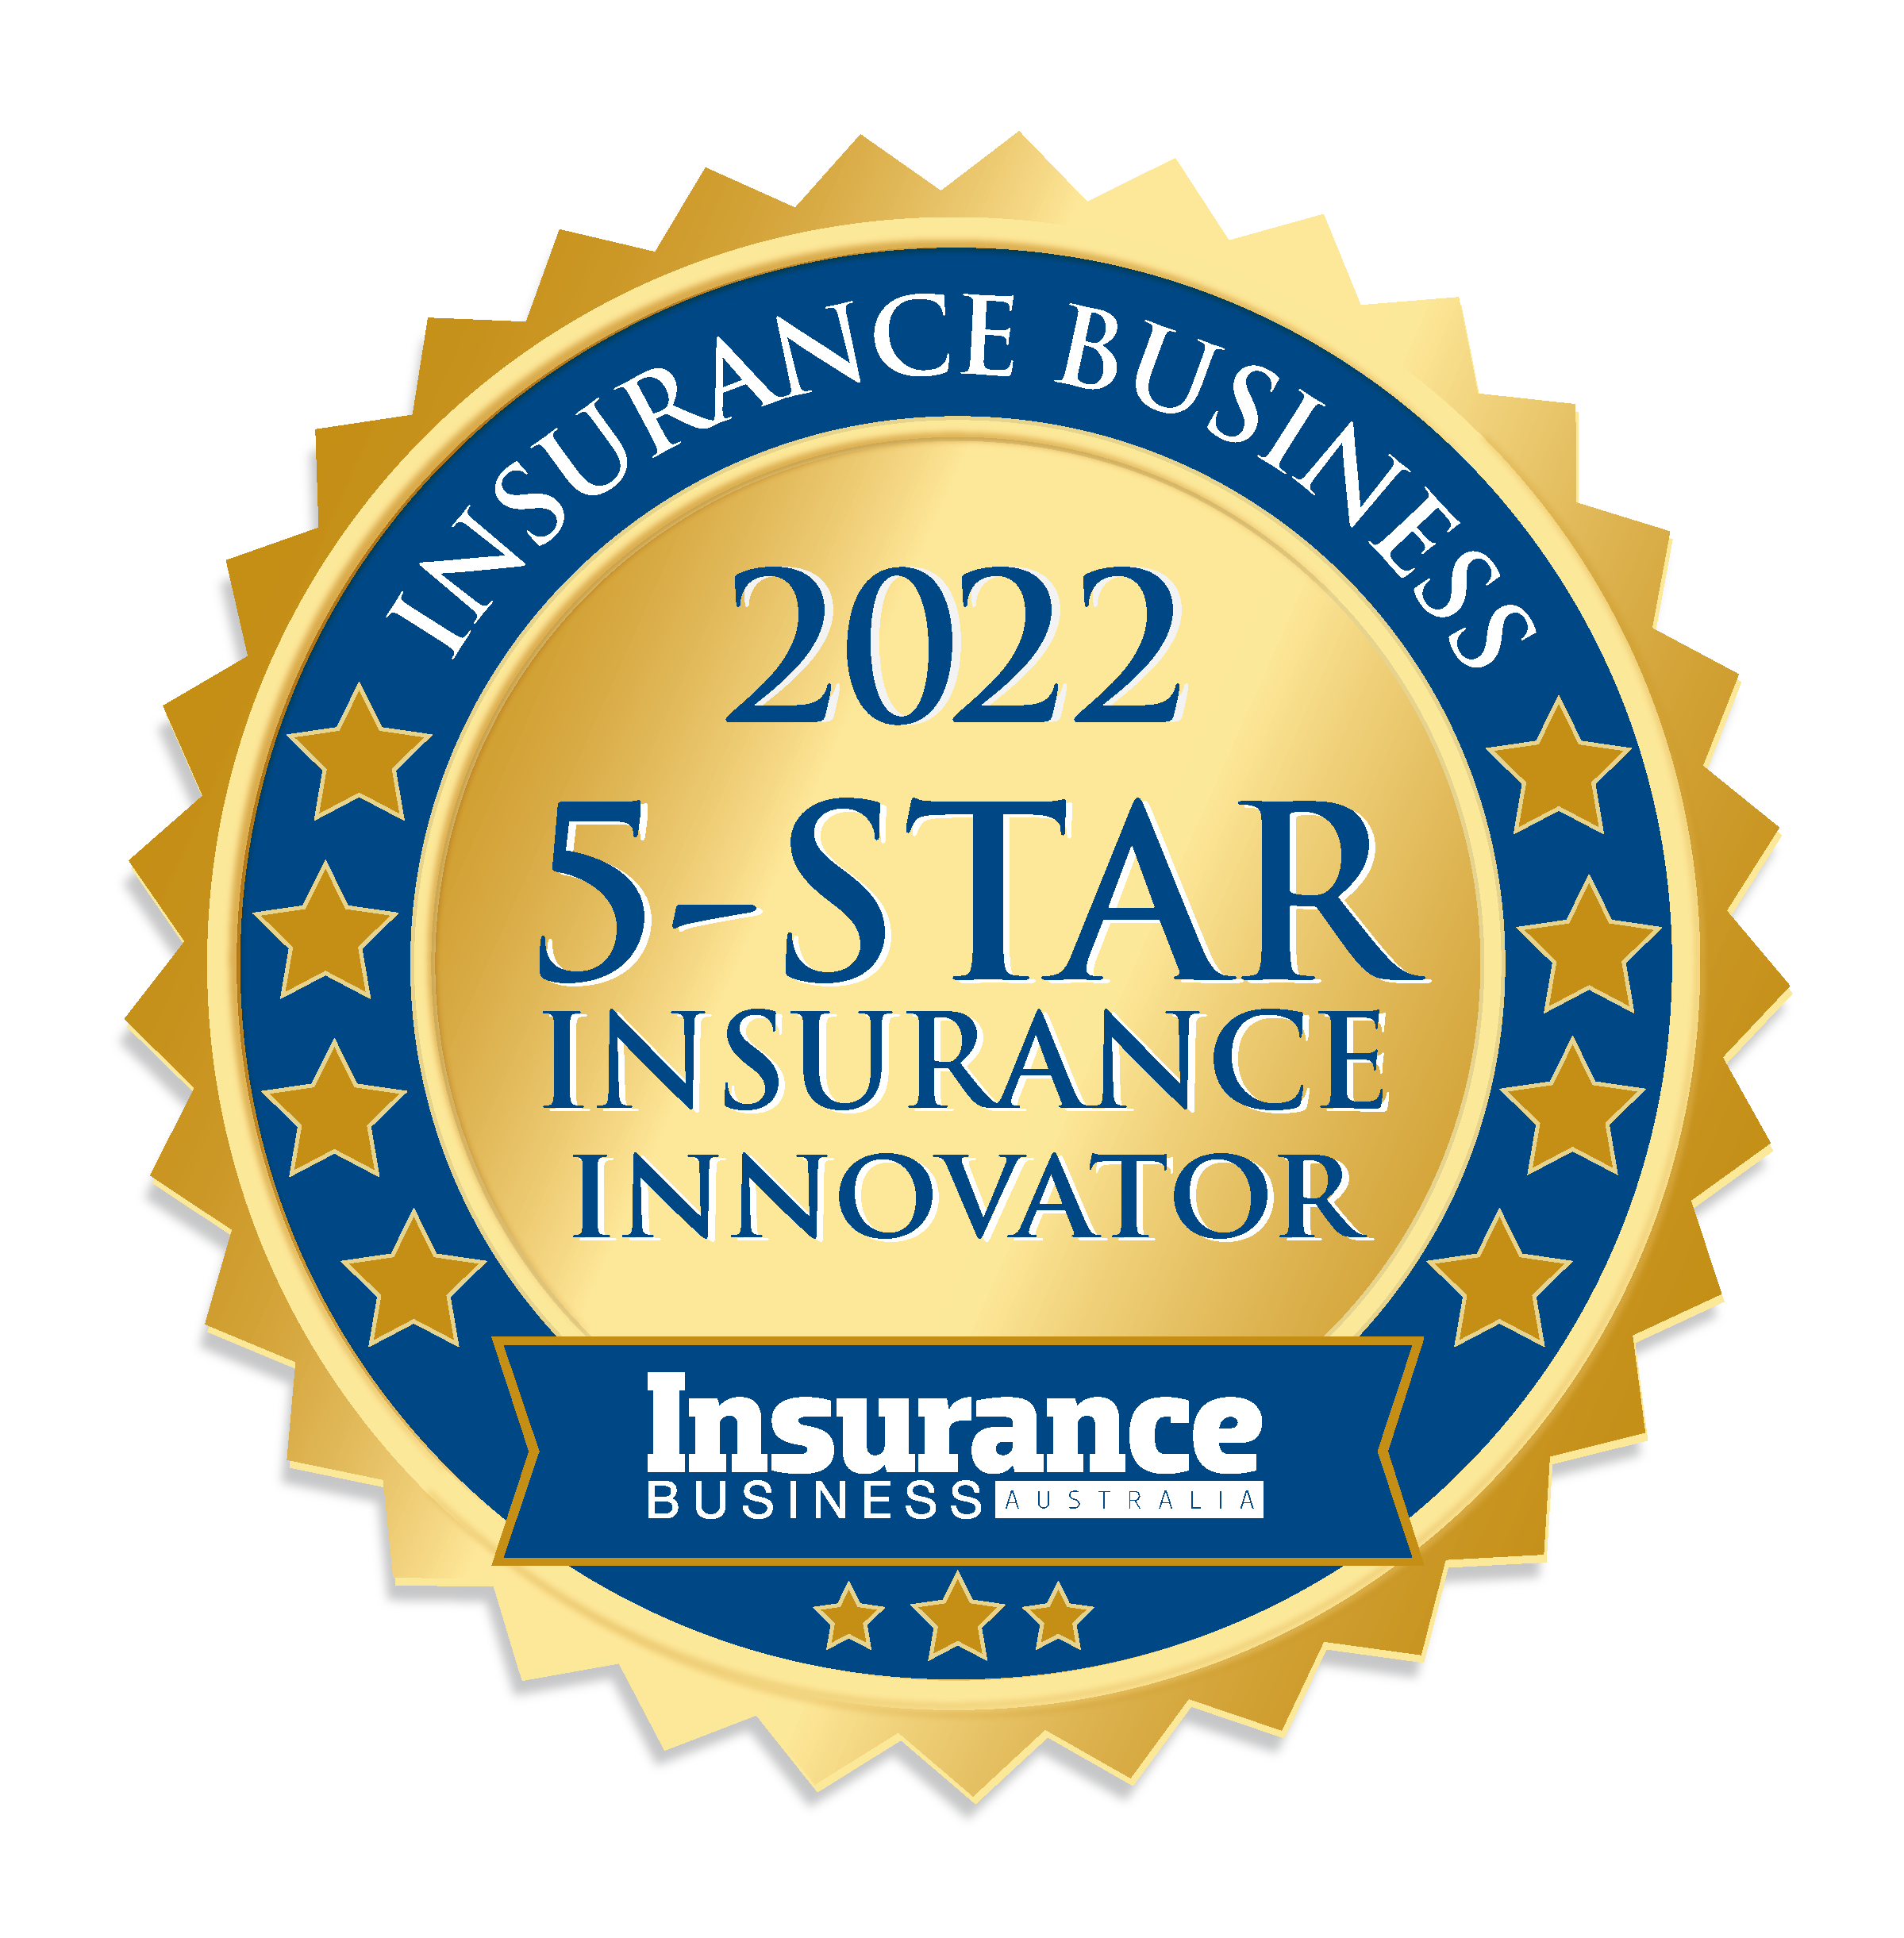 IB Inovators Award 2022